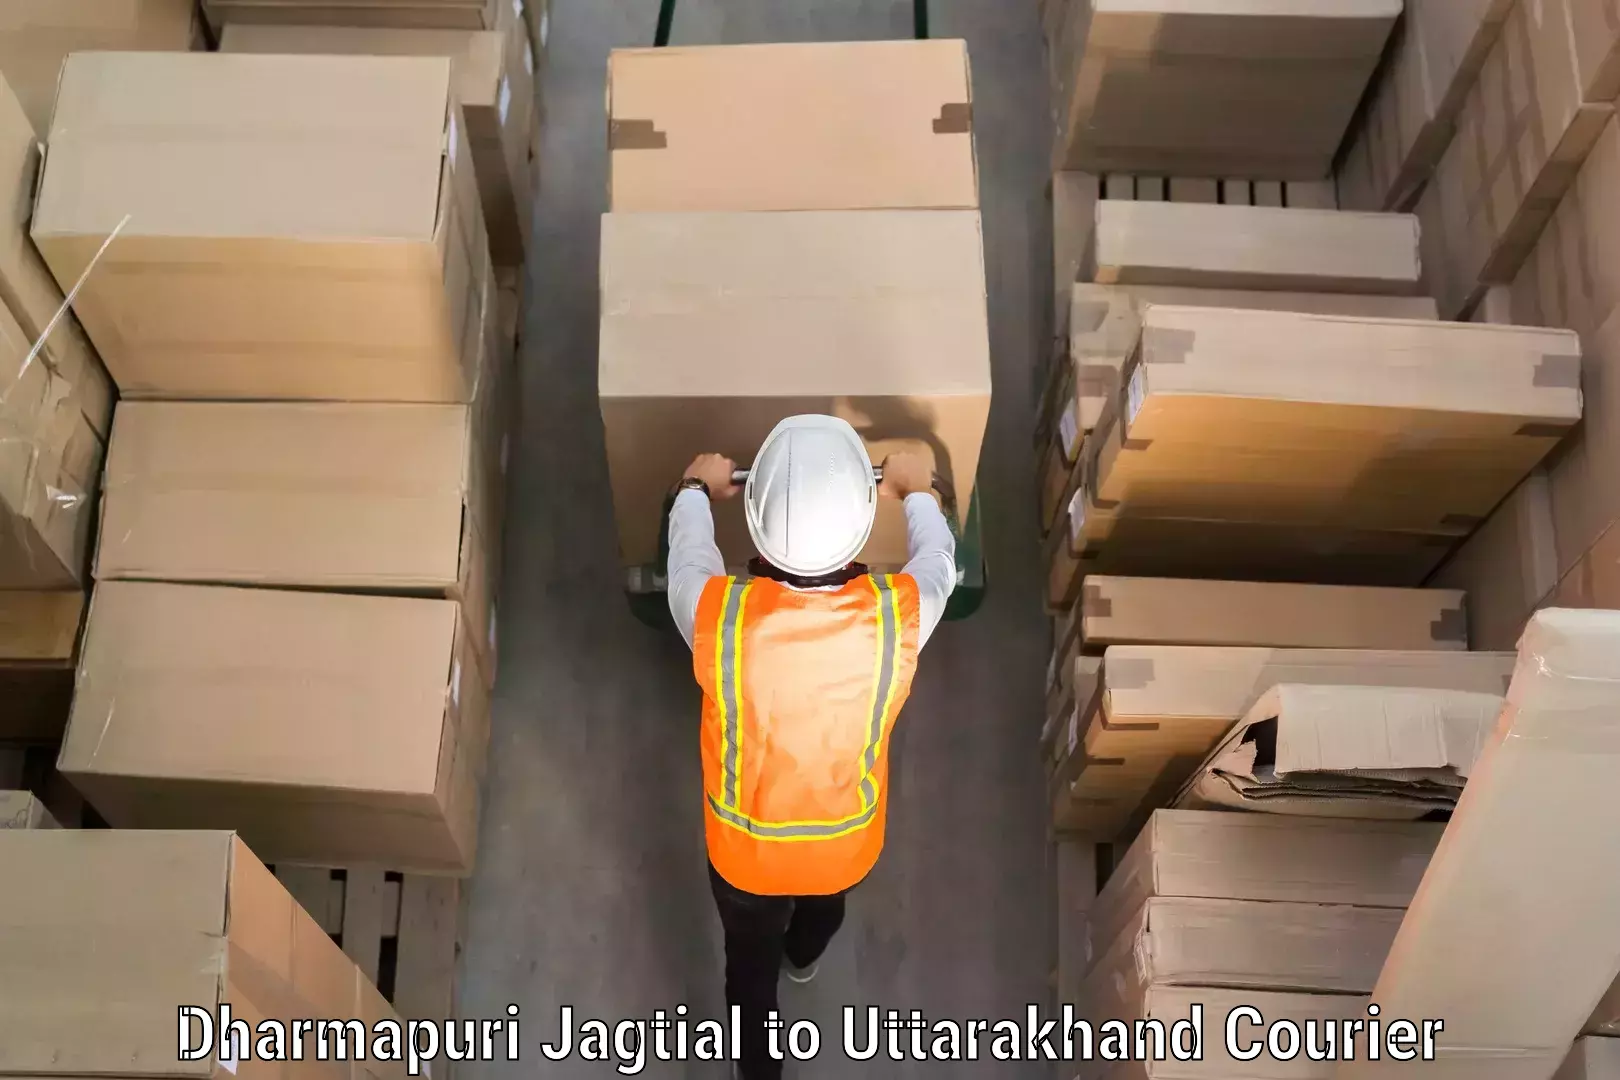 Baggage transport professionals Dharmapuri Jagtial to IIT Roorkee